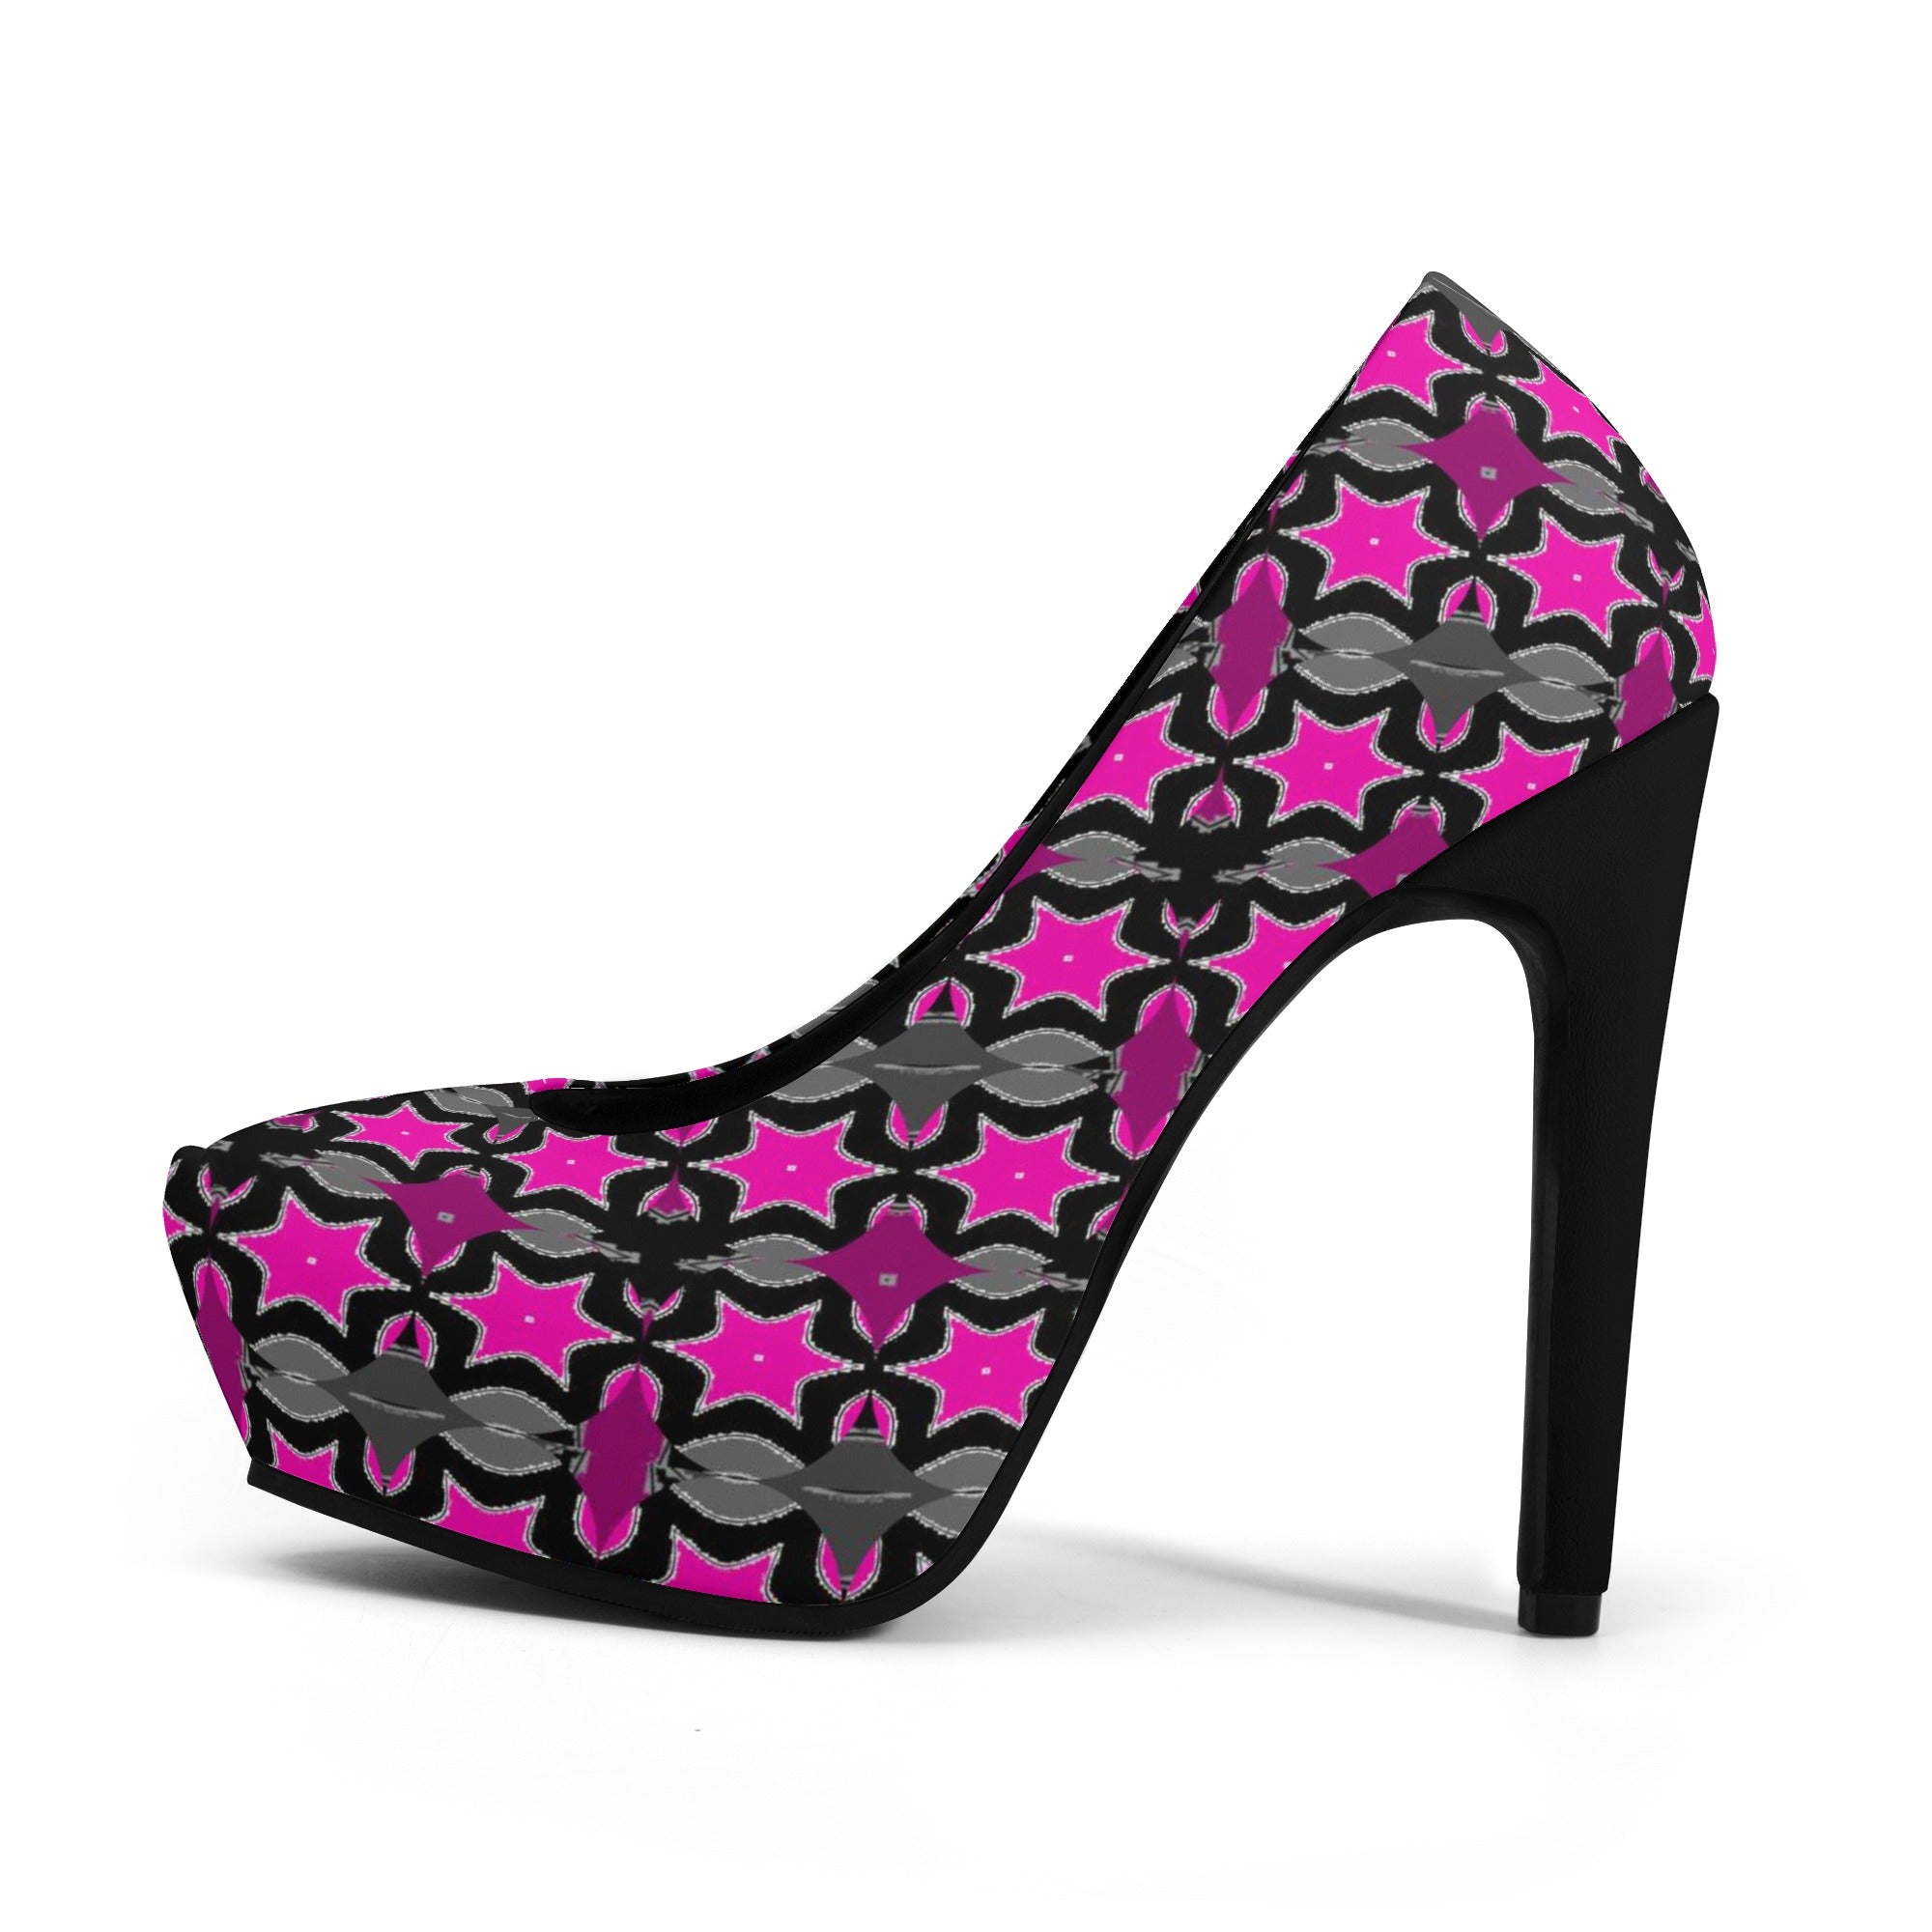 - Pink Star Women Platform Pumps 5 Inch High Heels - womens heels at TFC&H Co.